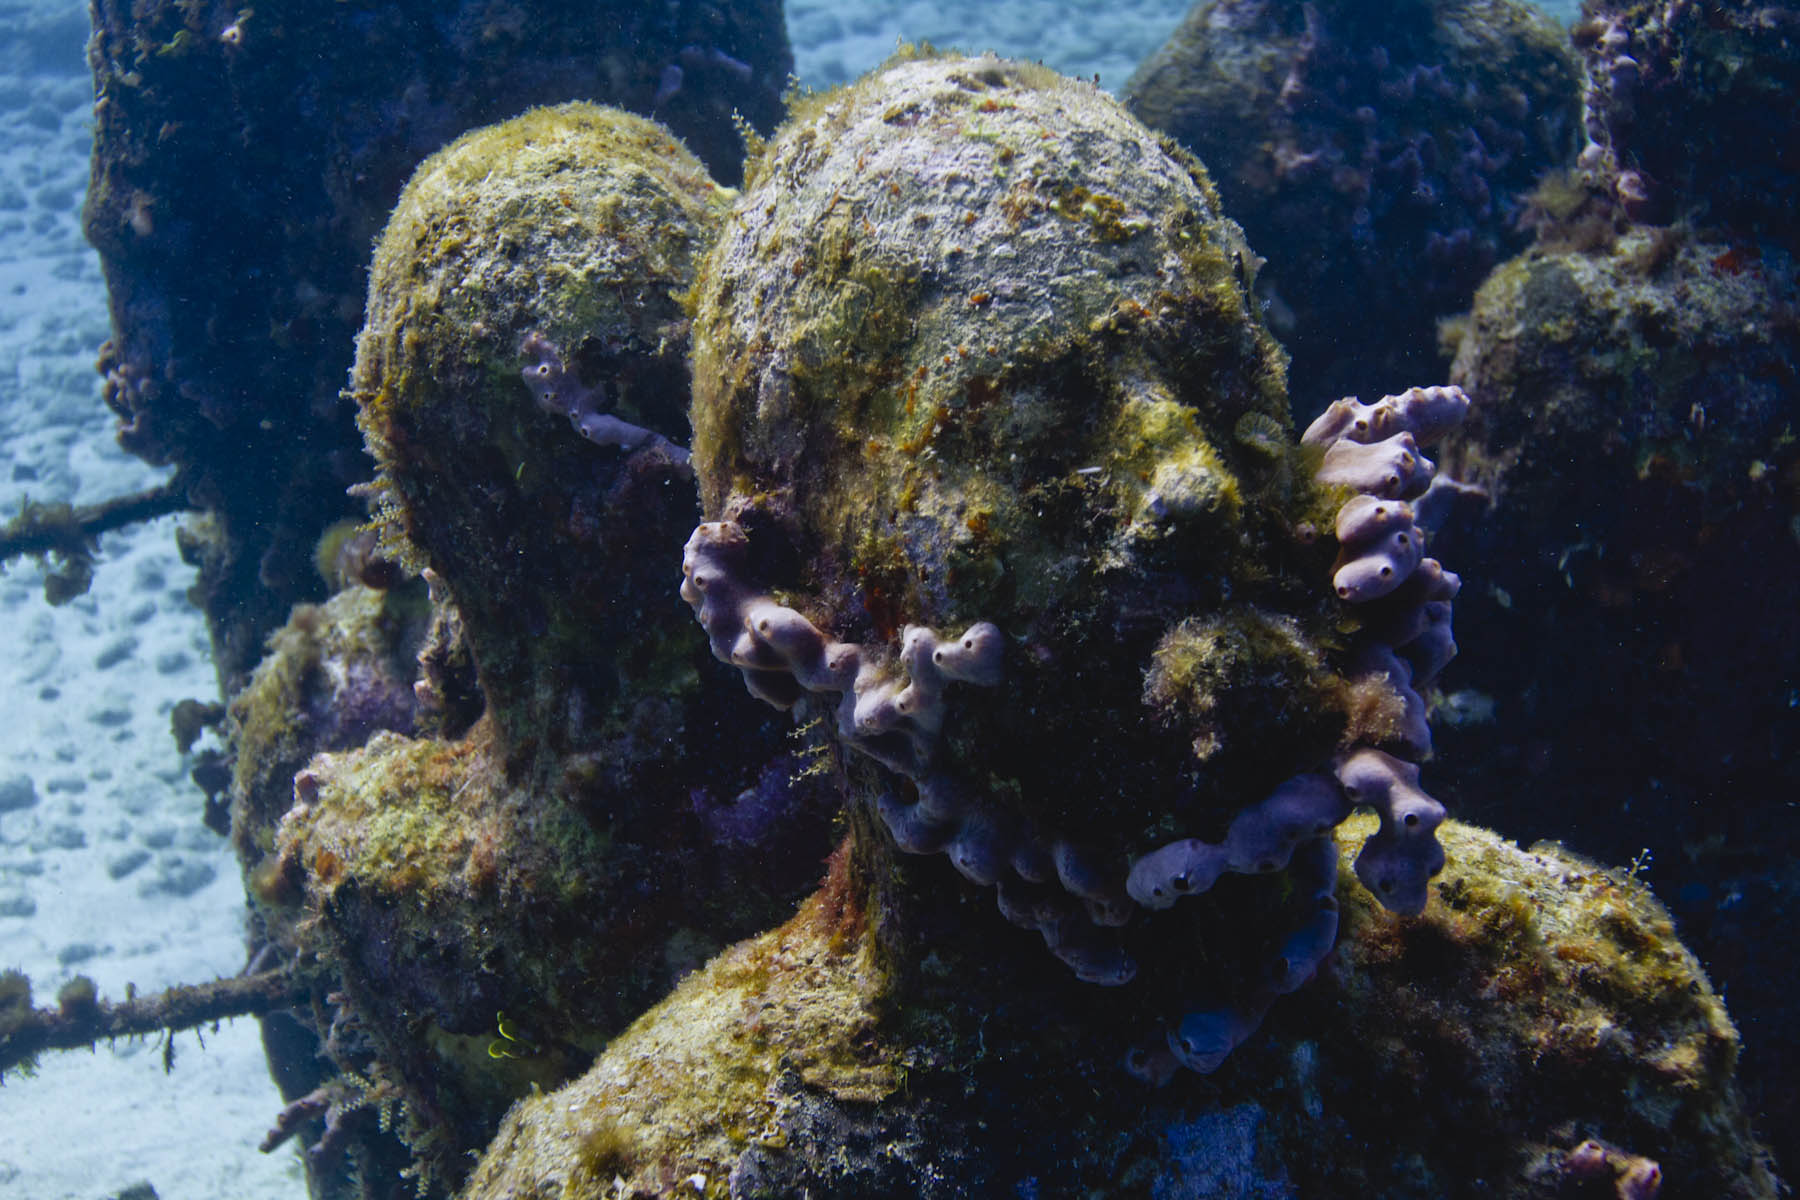 Jason-DeCaires-Taylor-Silent-evolution-underwater-sculpture